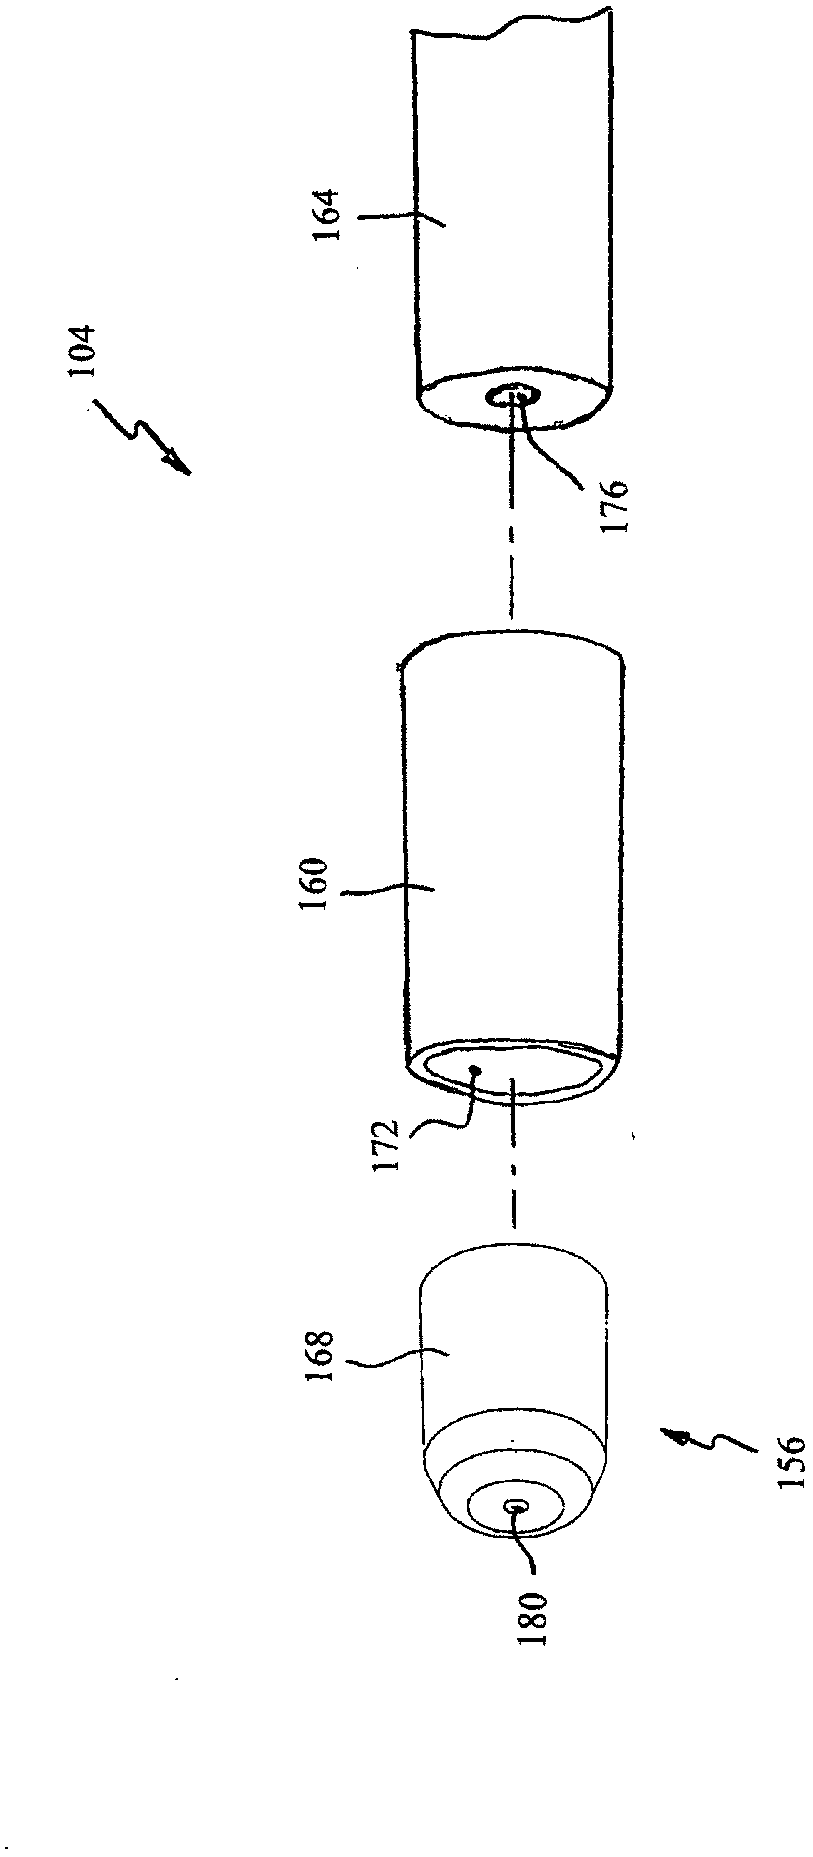 Miniature fluid atomizer